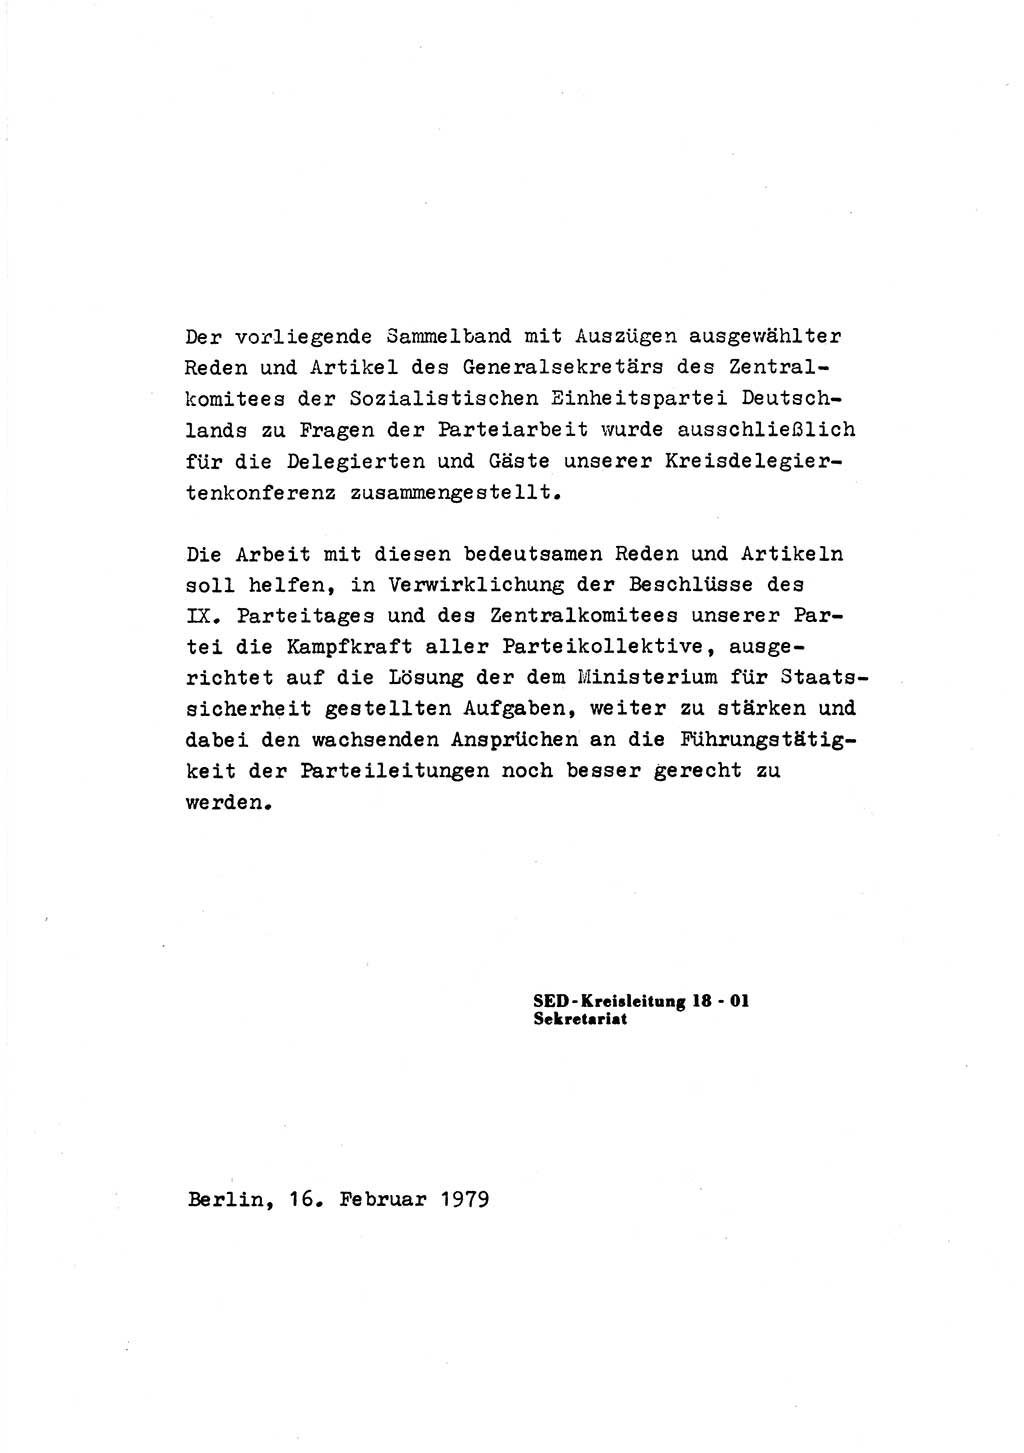 Zu Fragen der Parteiarbeit [Sozialistische Einheitspartei Deutschlands (SED) Deutsche Demokratische Republik (DDR)] 1979, Seite 5 (Fr. PA SED DDR 1979, S. 5)